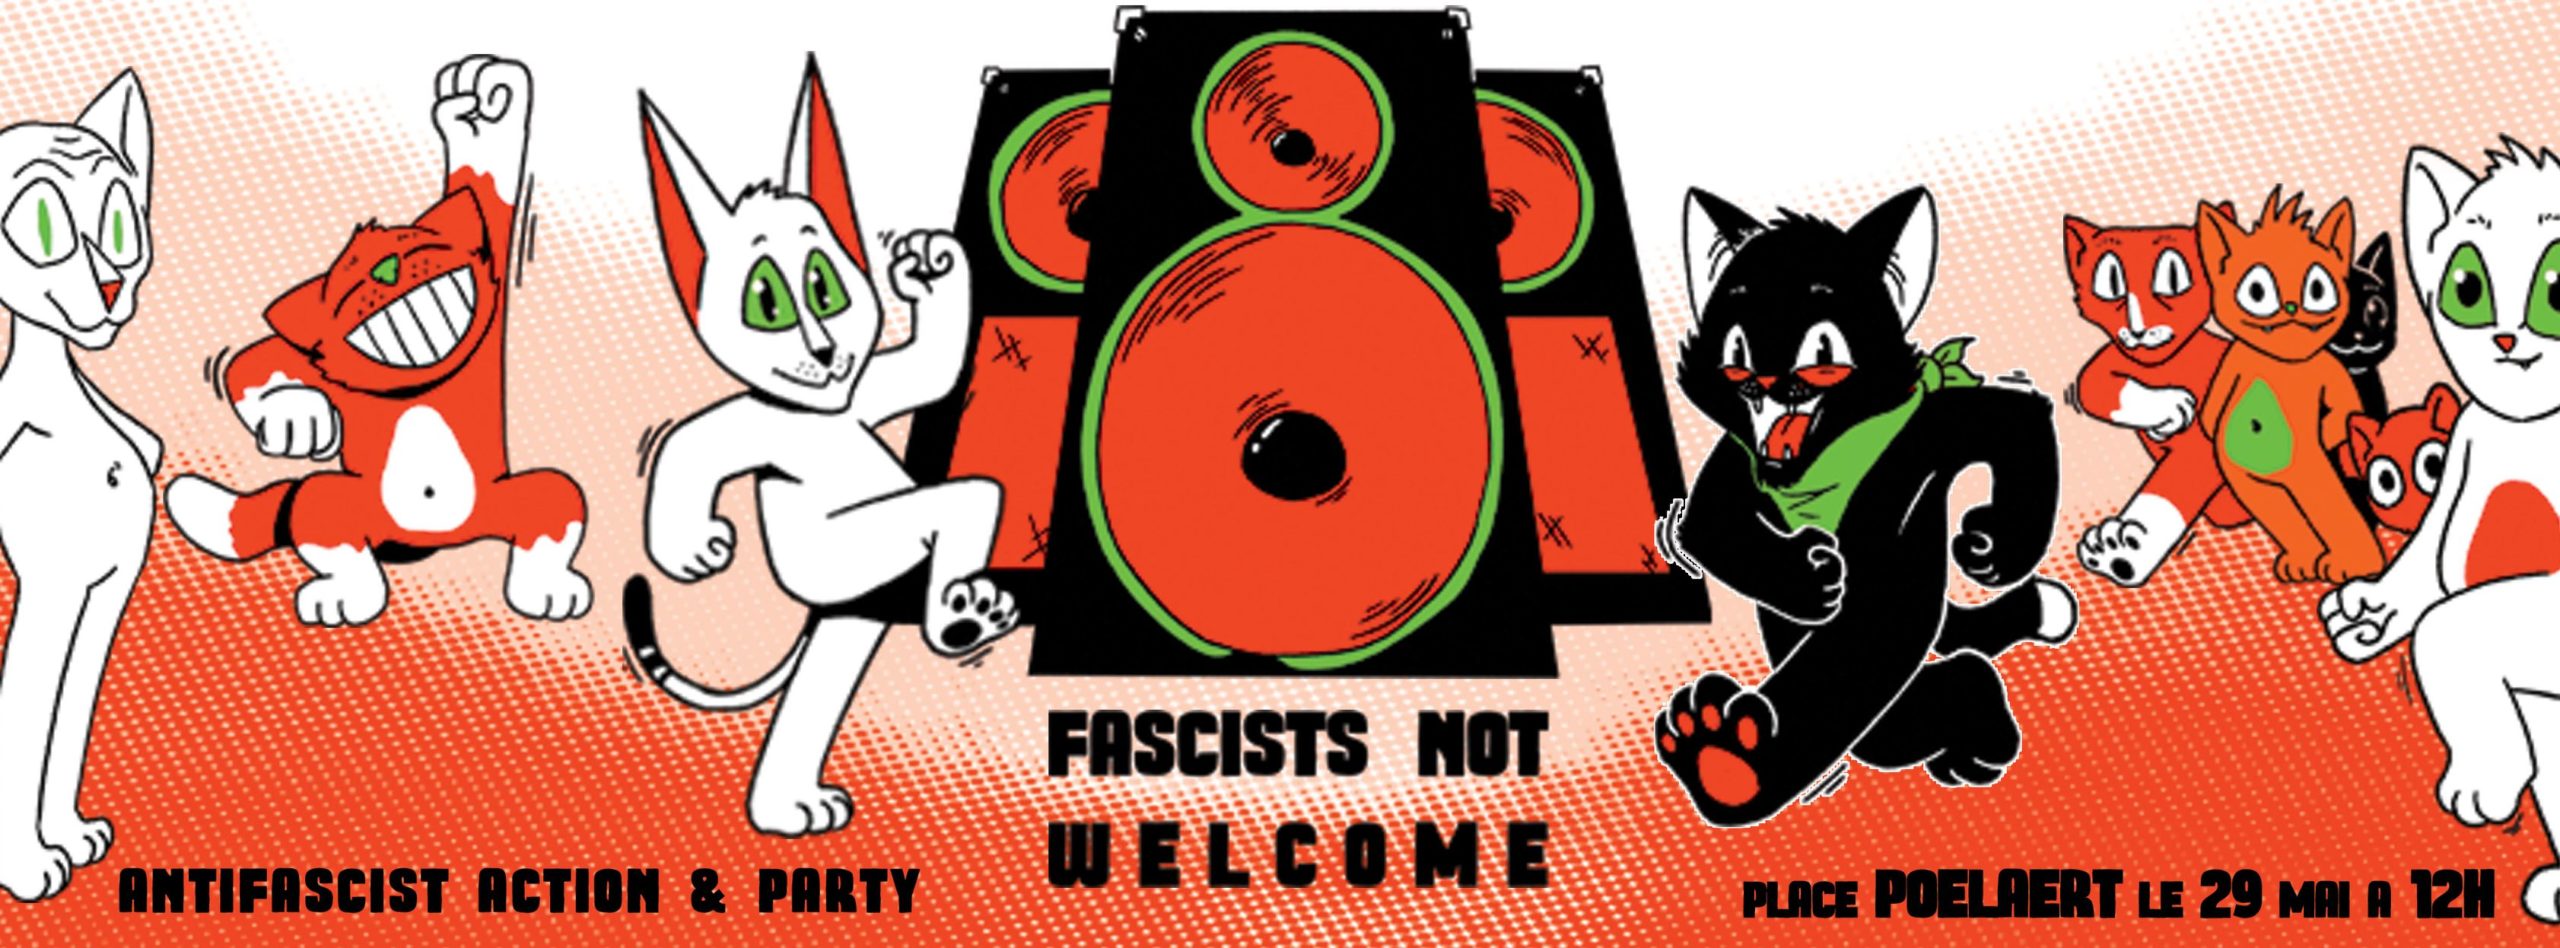 Antifascistische actie/feest tegenover de geplande betoging van het Vlaams Belang in Brussel